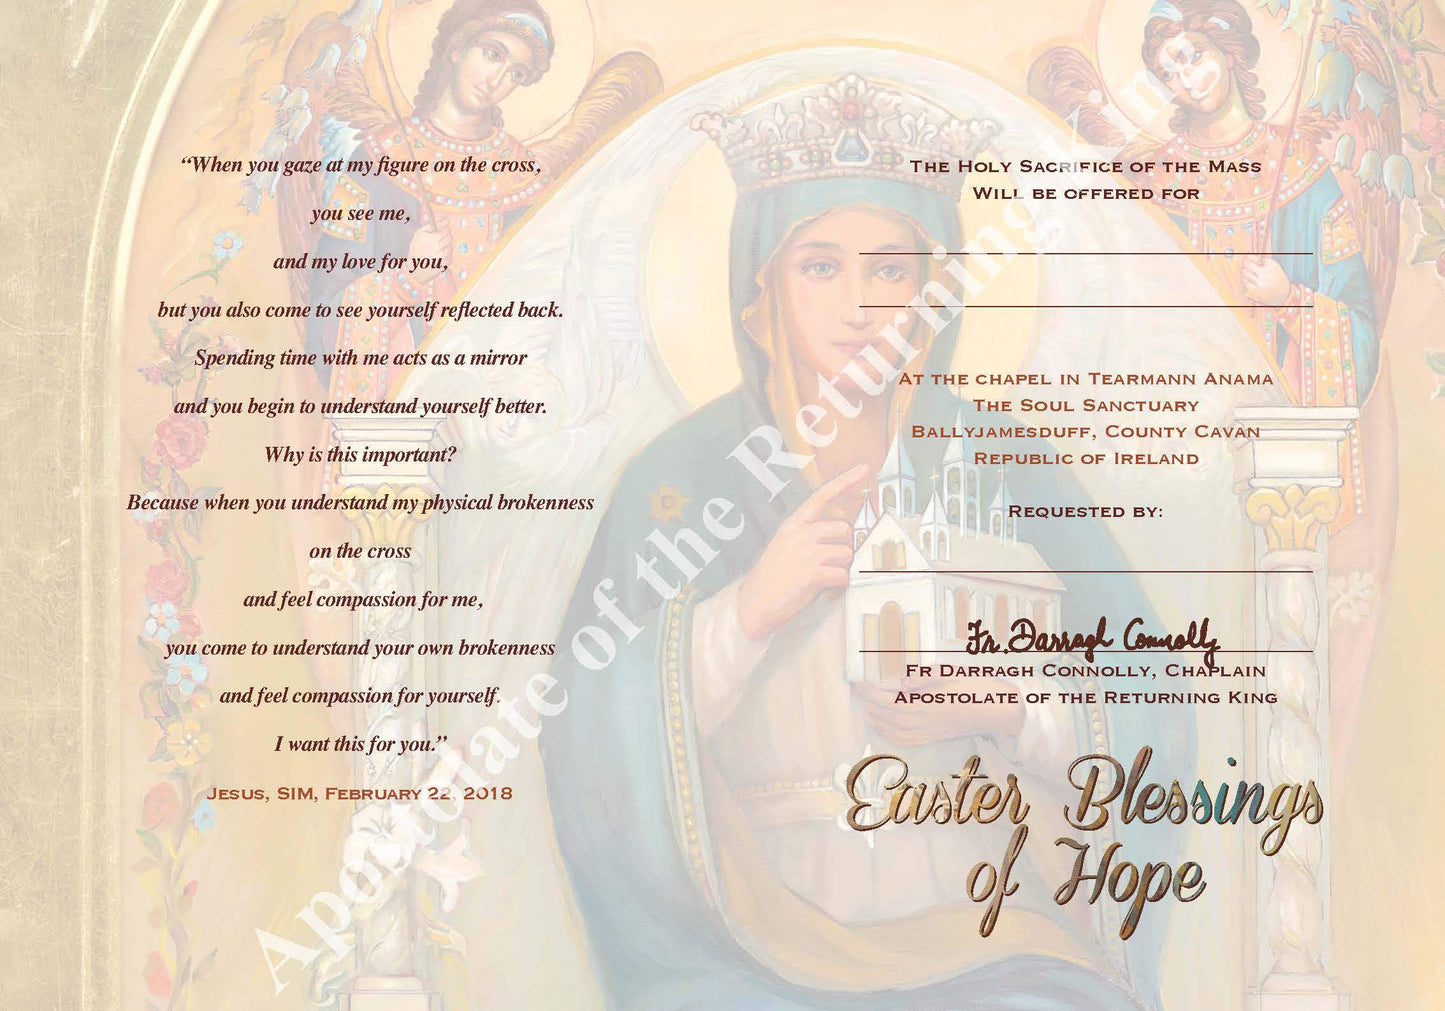 Easter Blessings of Hope Mass Card